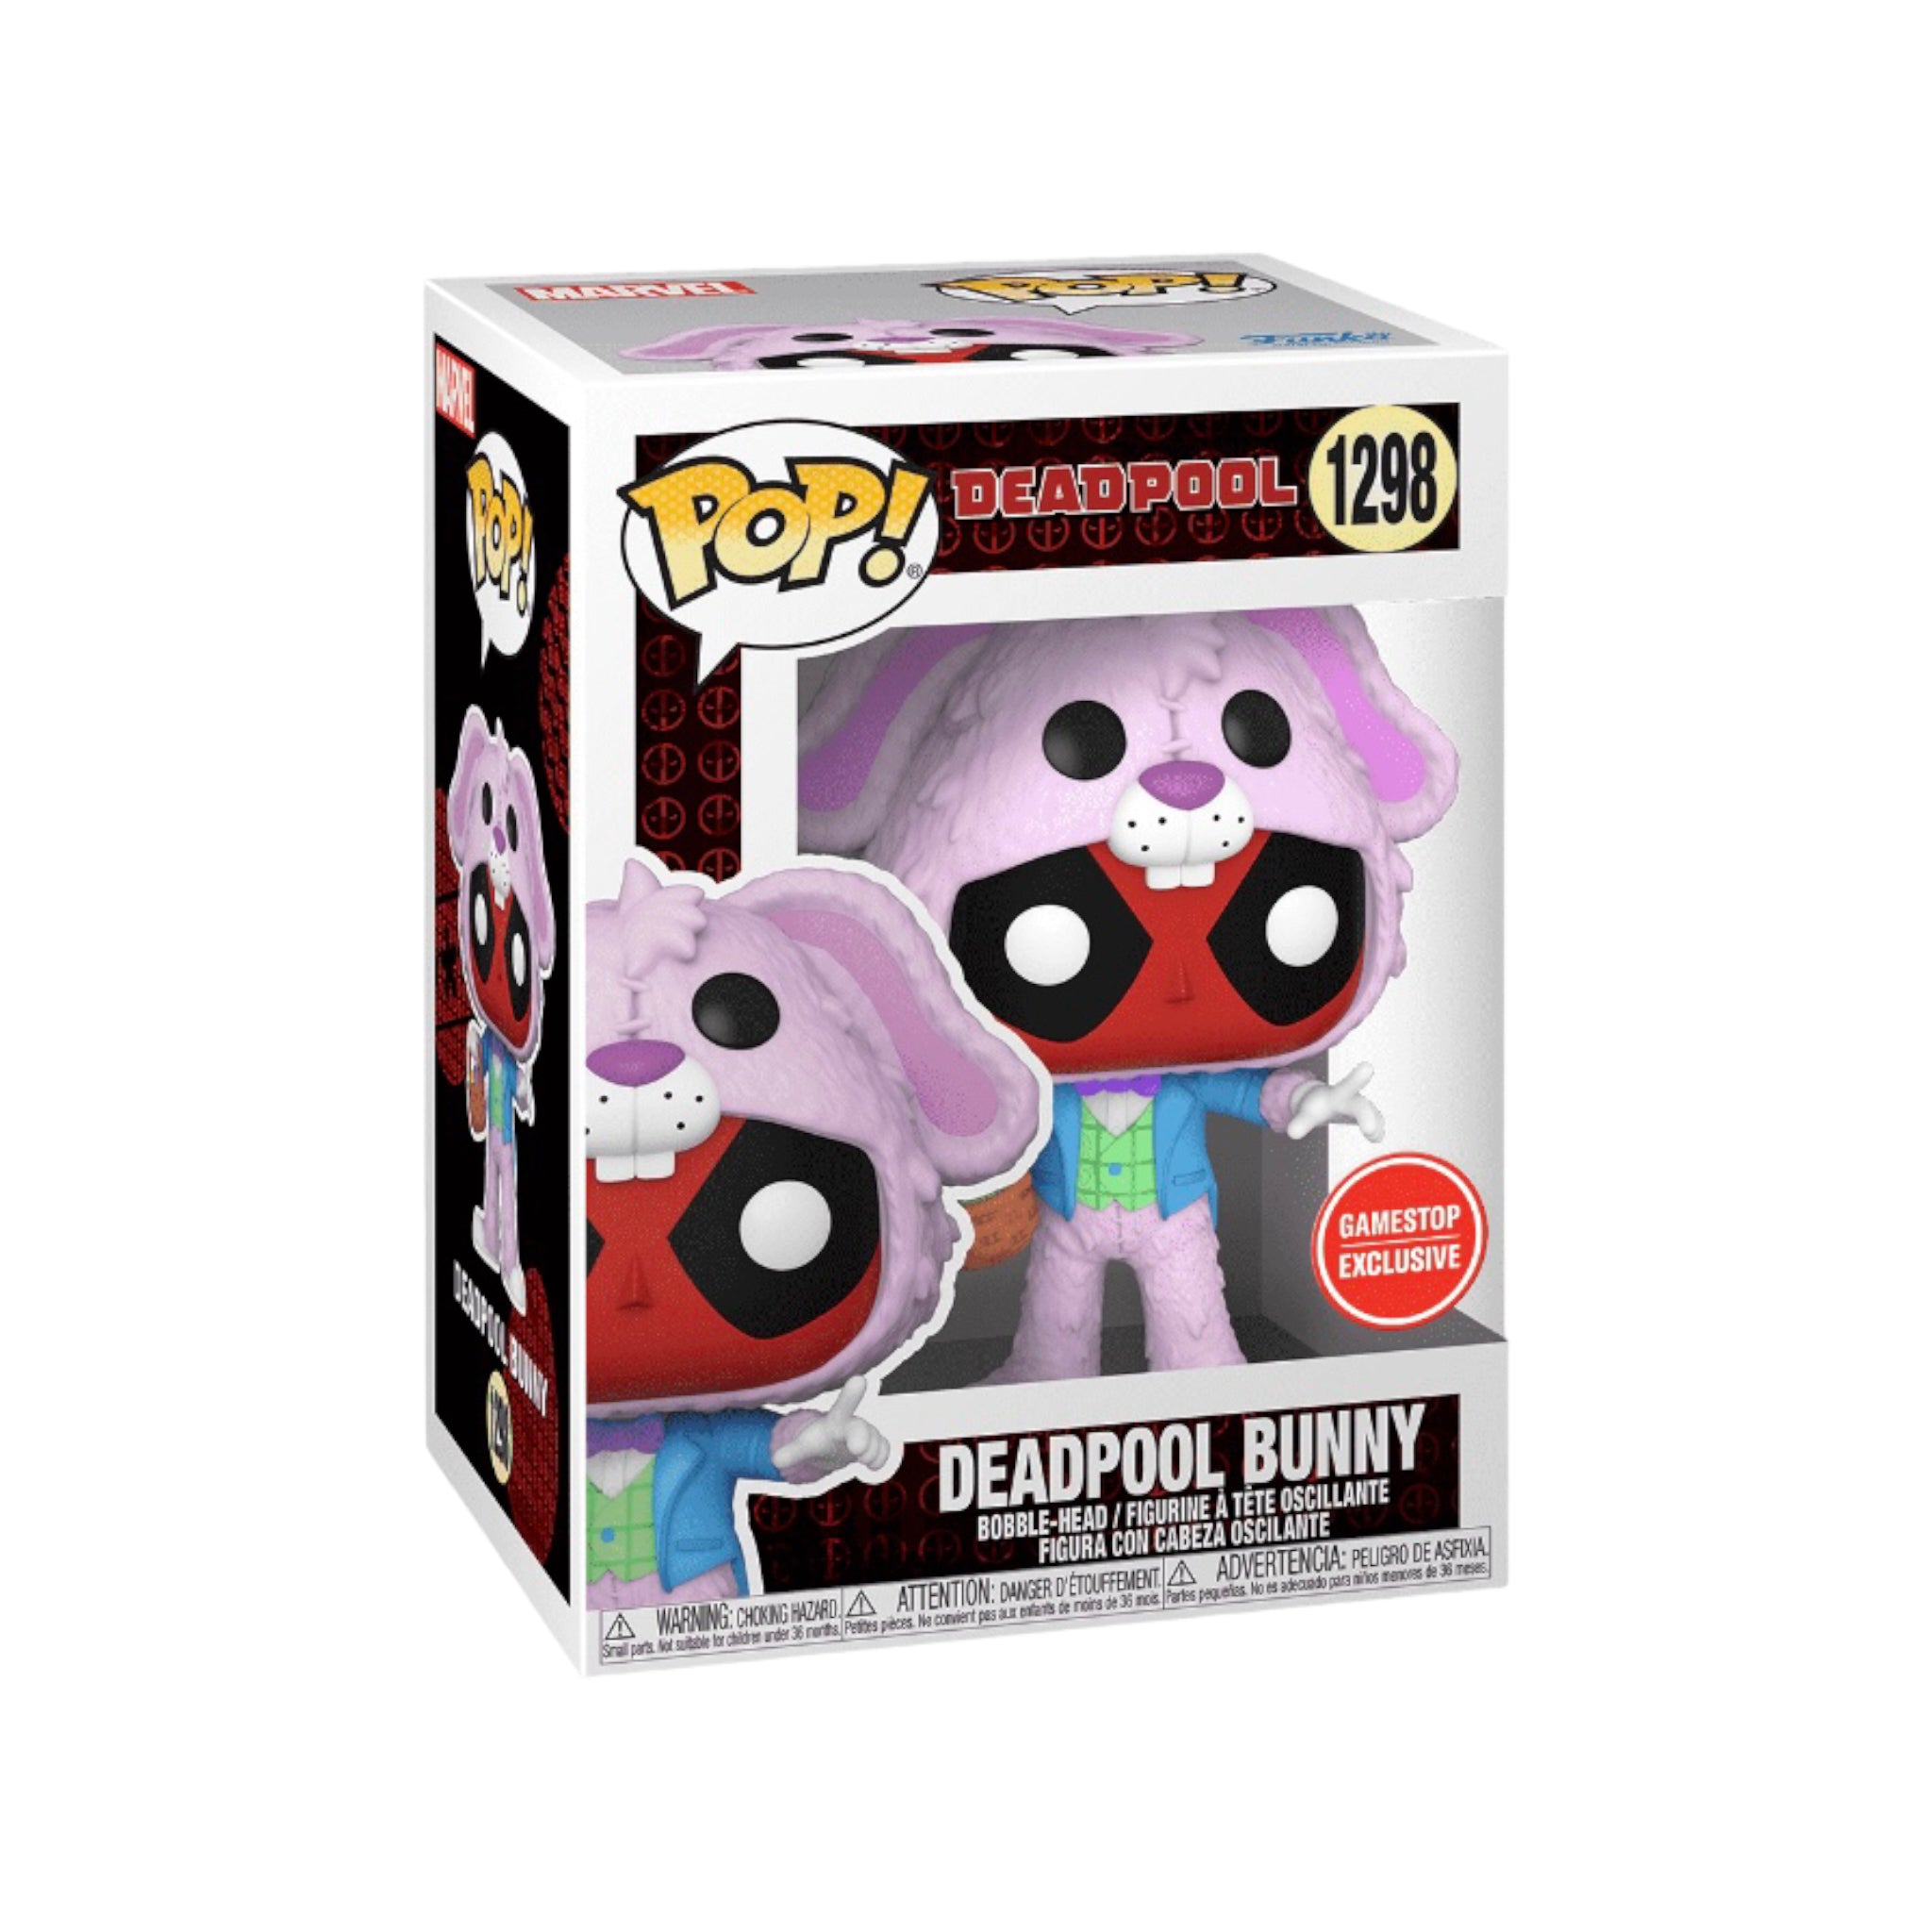 Deadpool Bunny #1298 Funko Pop! - Deadpool - GameStop Exclusive